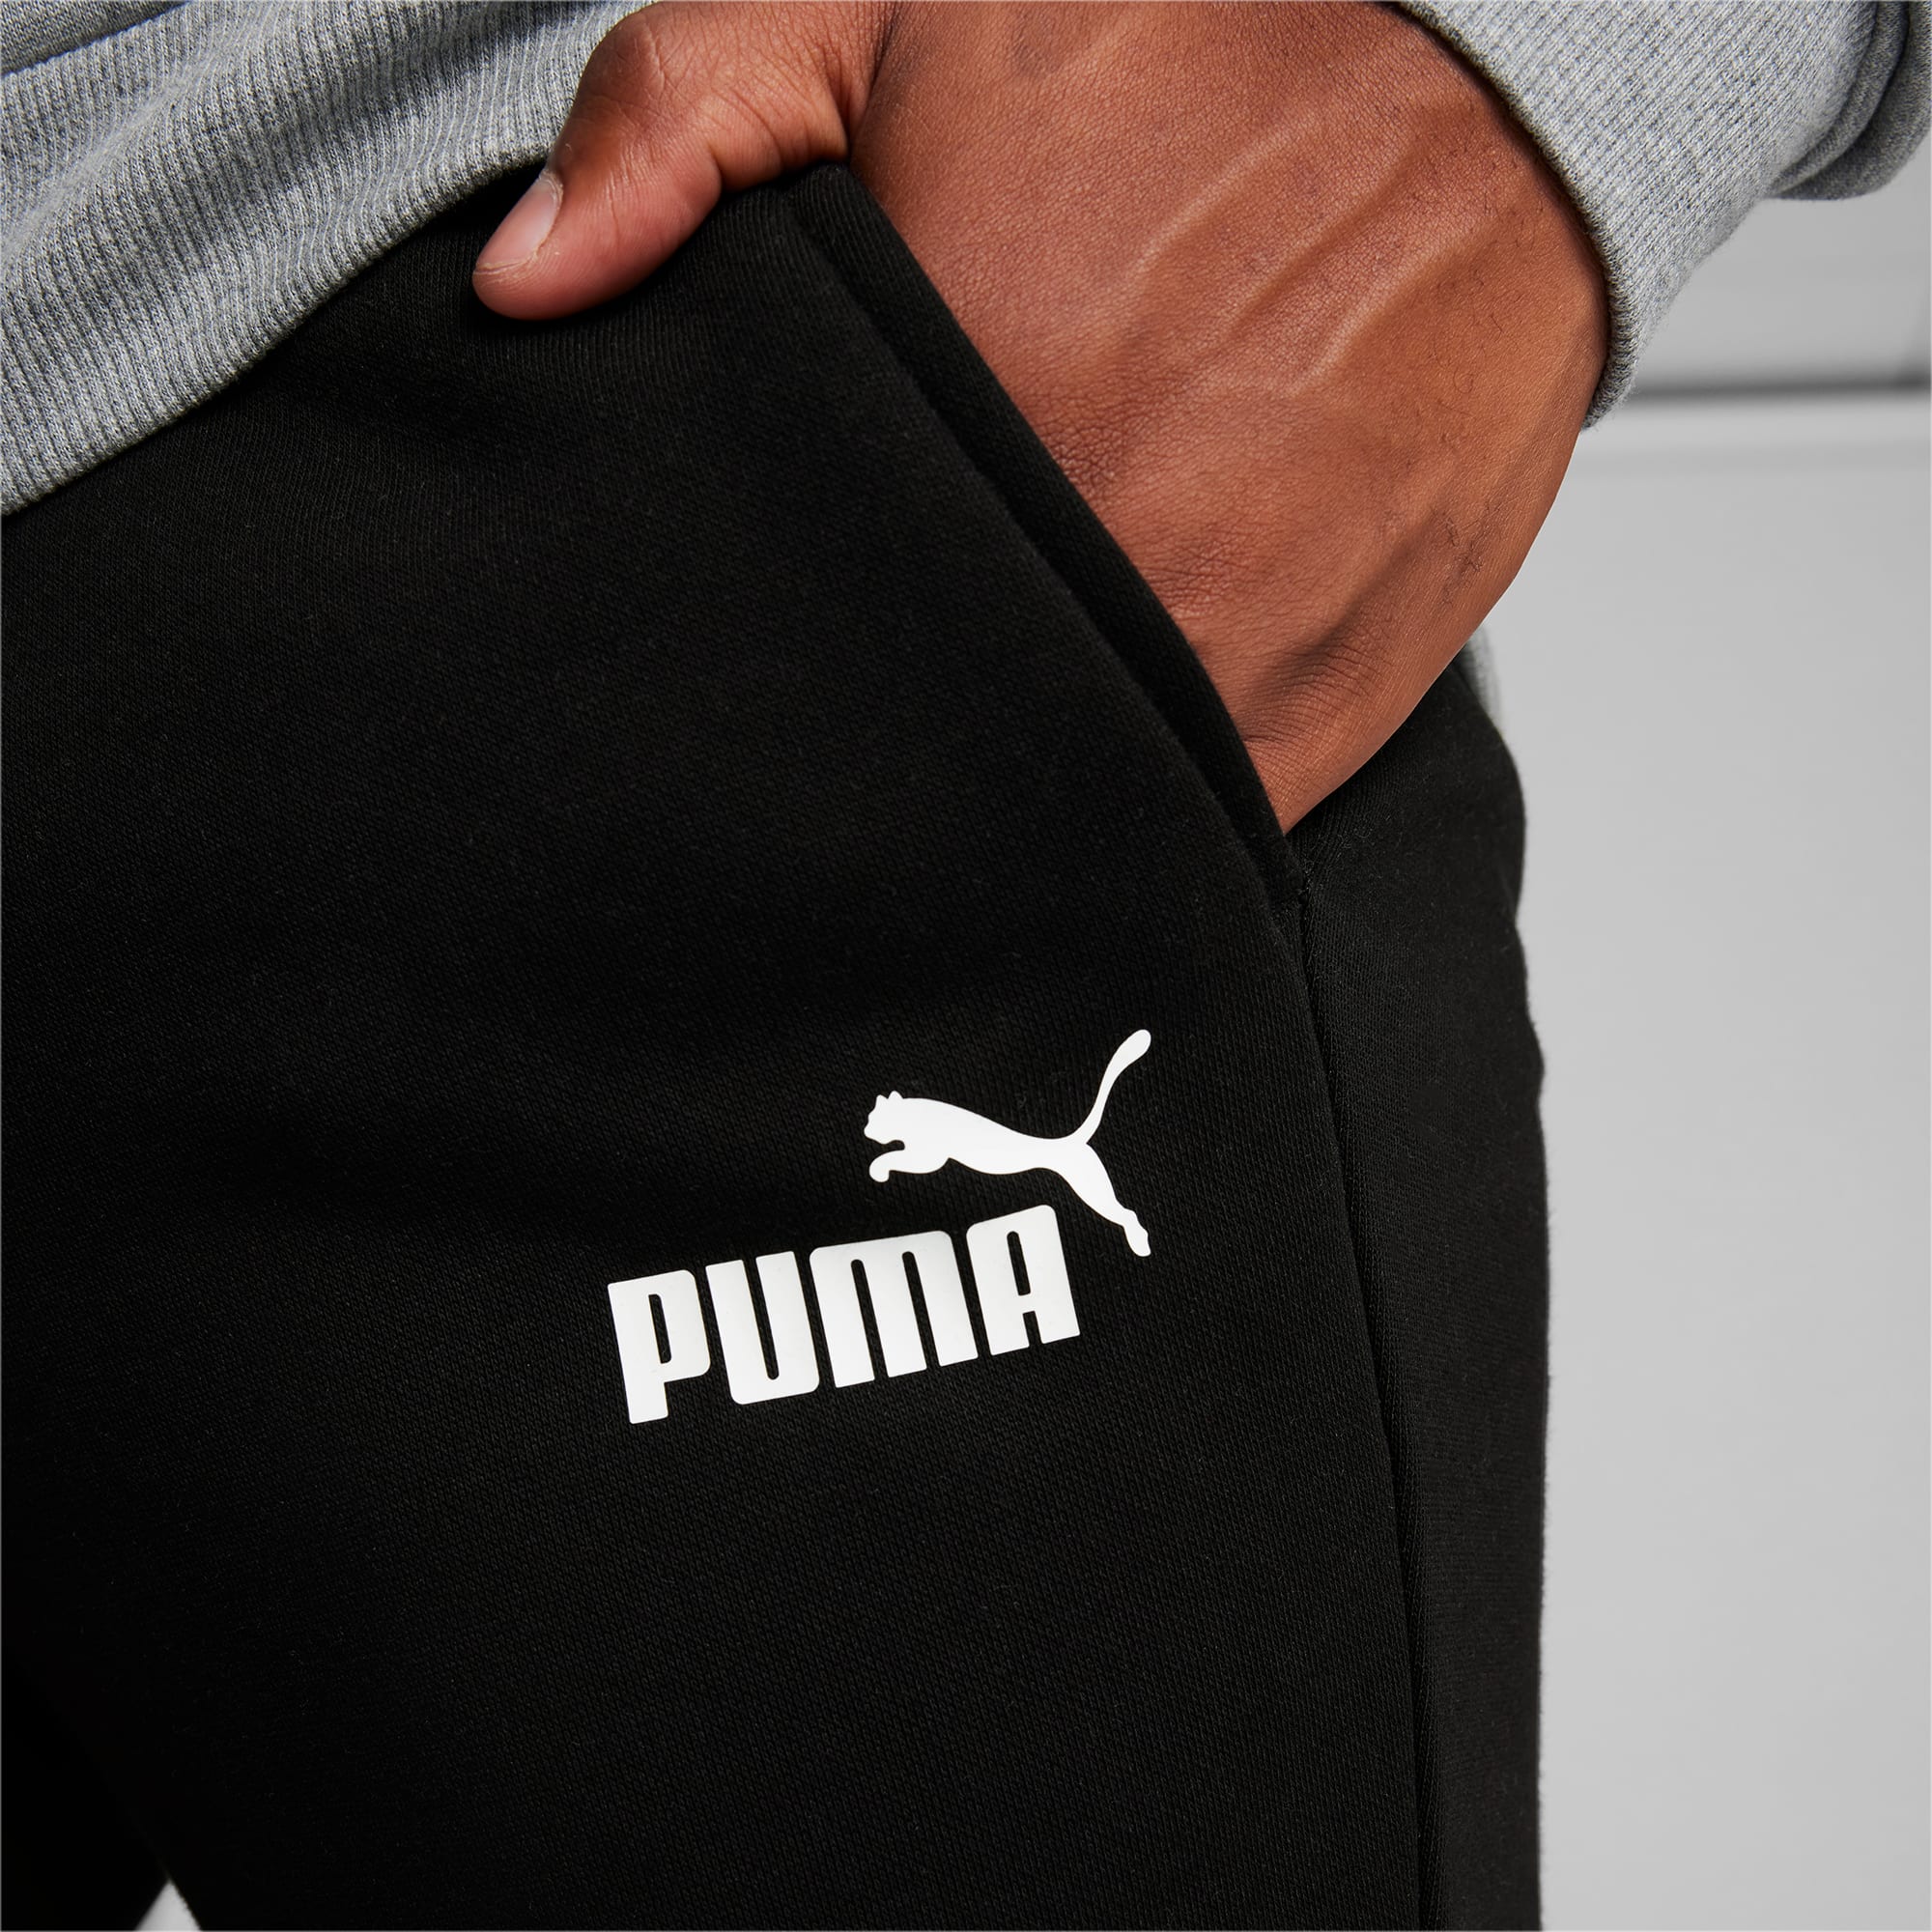 Puma - Men's Essentials Big Logo Sweatpants (849865 01) – SVP Sports